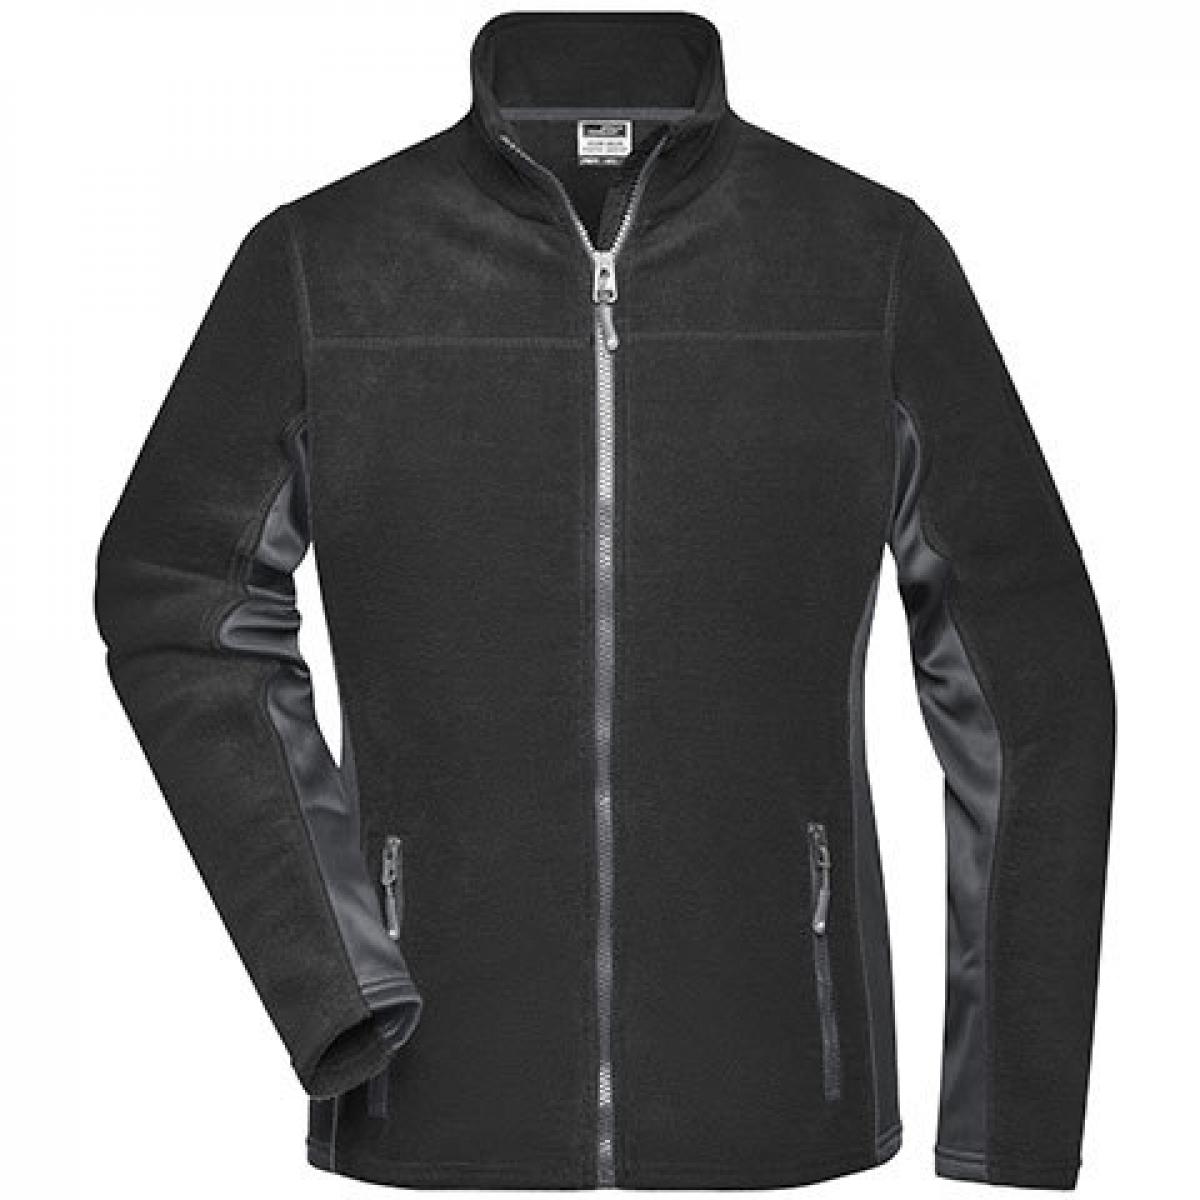 Hersteller: James+Nicholson Herstellernummer: JN841 Artikelbezeichnung: Damen‘ Workwear Fleece Jacket -STRONG- Farbe: Black/Carbon